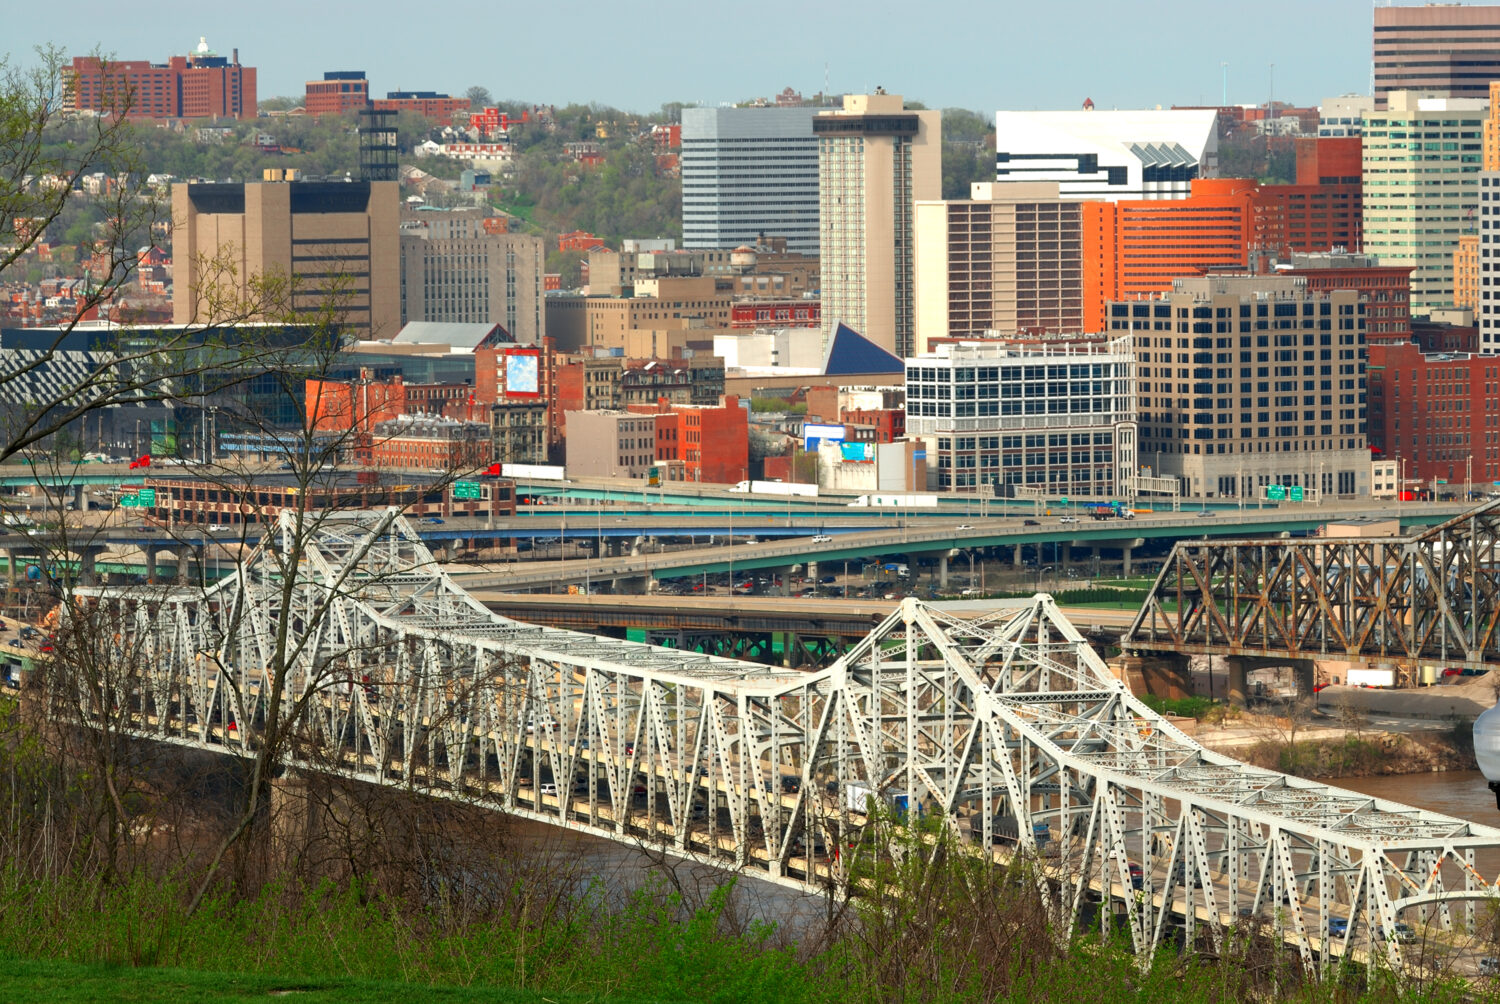 Veduta aerea del Brent Spence Bridge, Cincinnati Ohio e il traffico ringhiava autostrade che attraversano il fiume Ohio dal Kentucky all'Ohio.